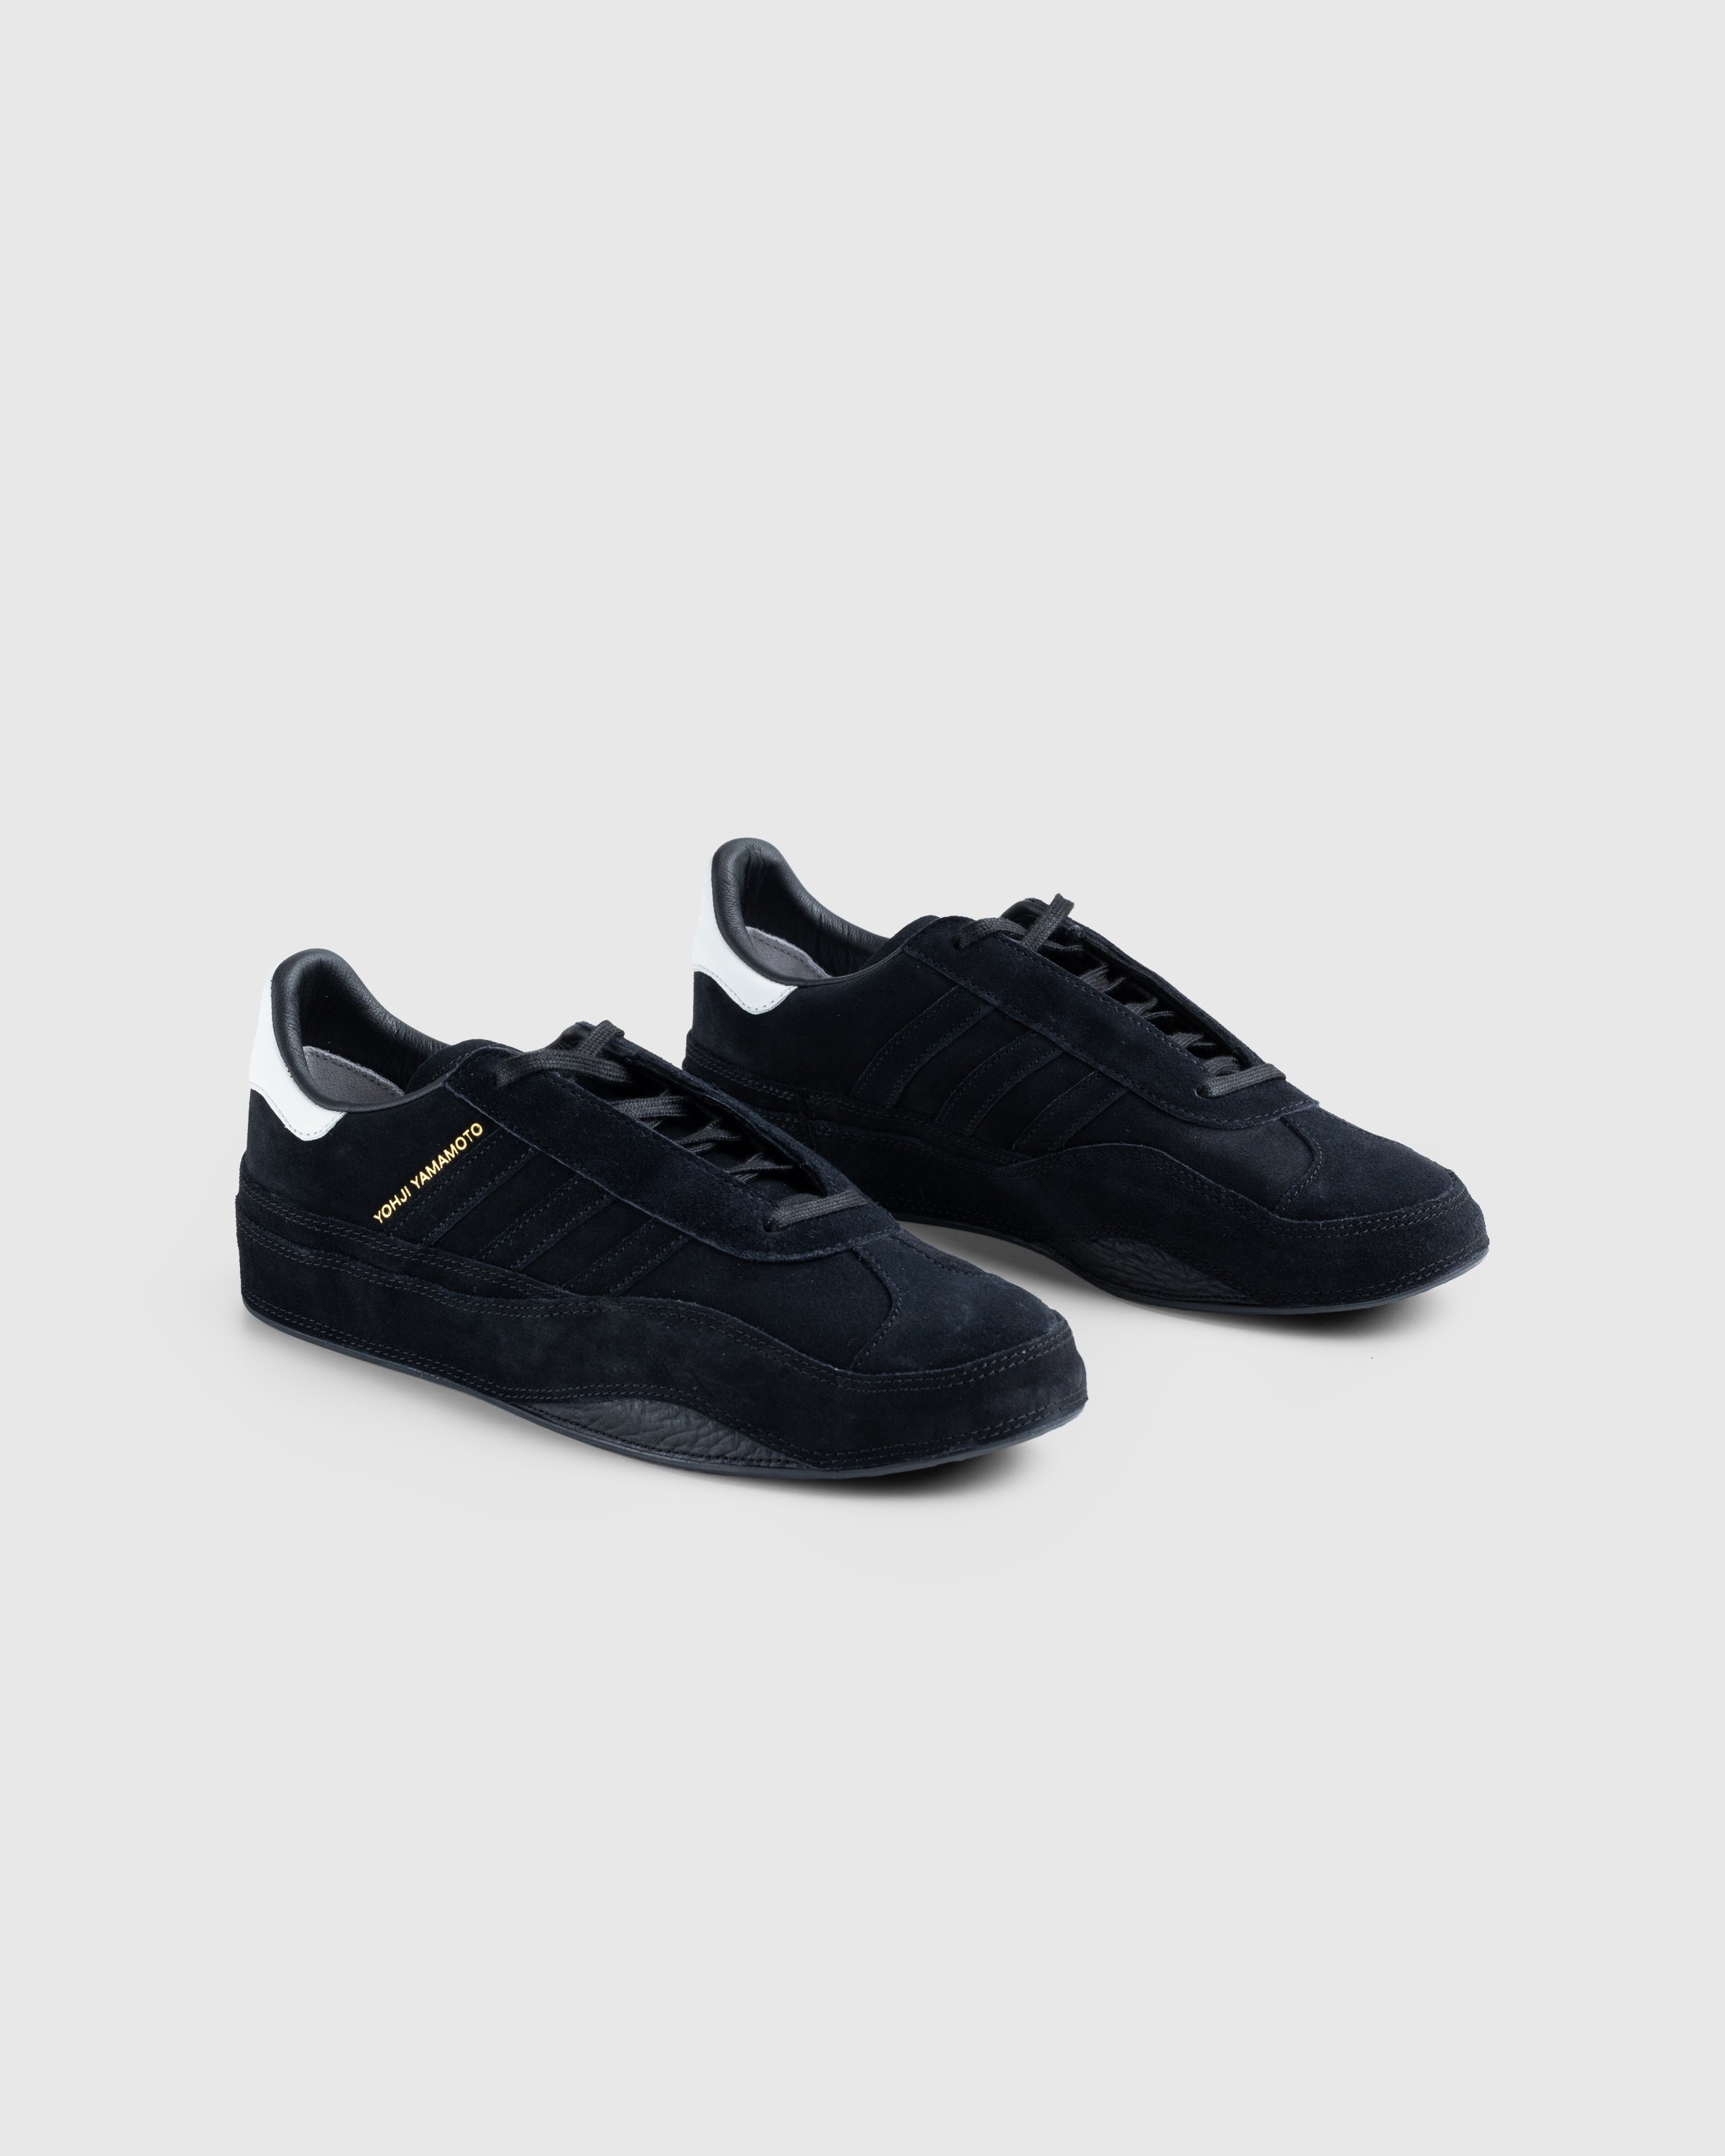 Y-3 - Gazelle Black - Footwear - Black - Image 3